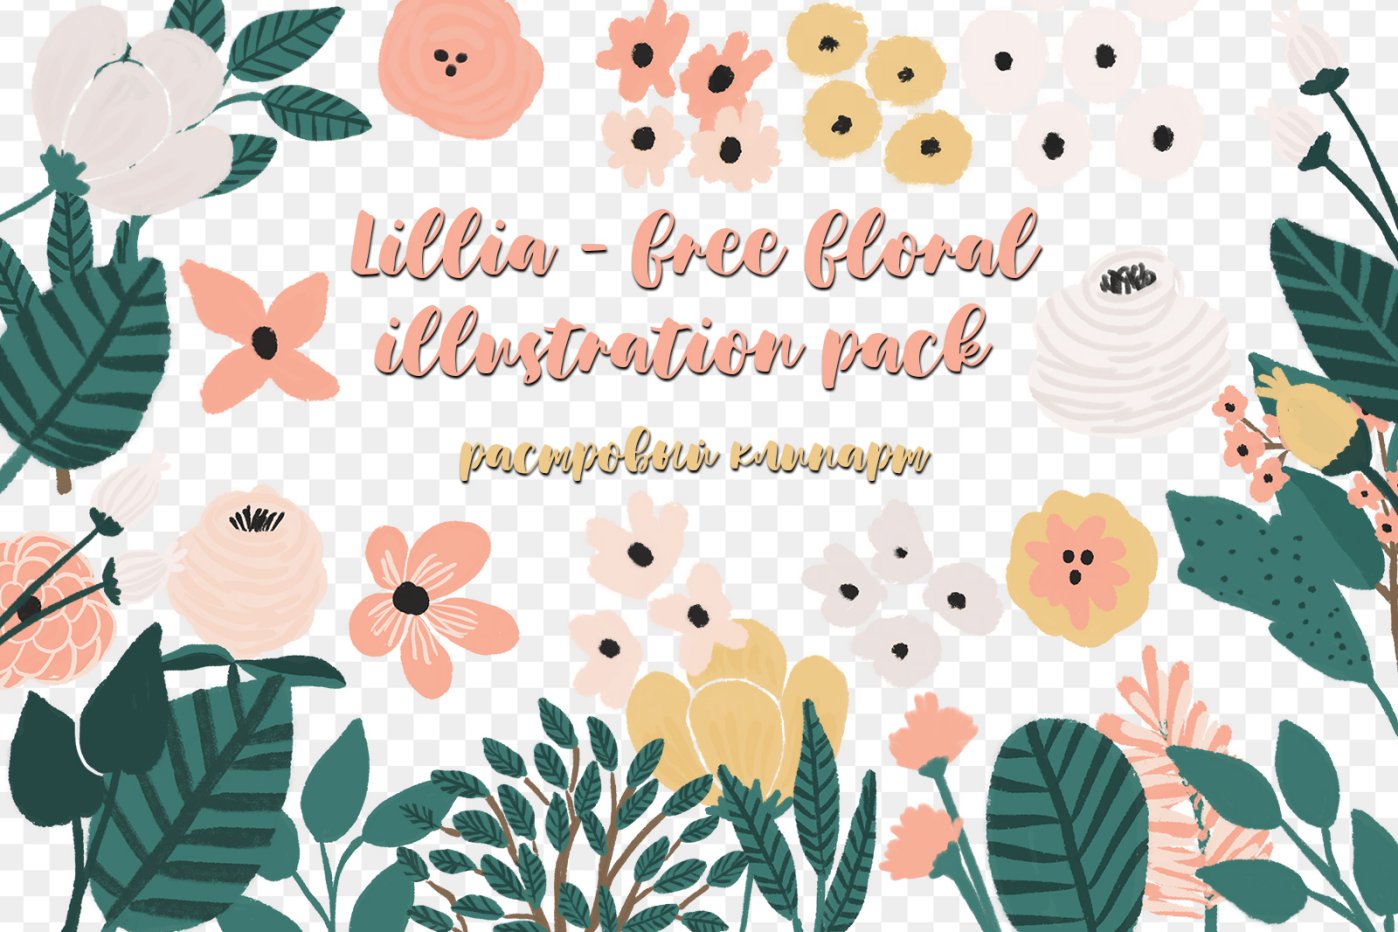 Lillia - free floral illustration pack png